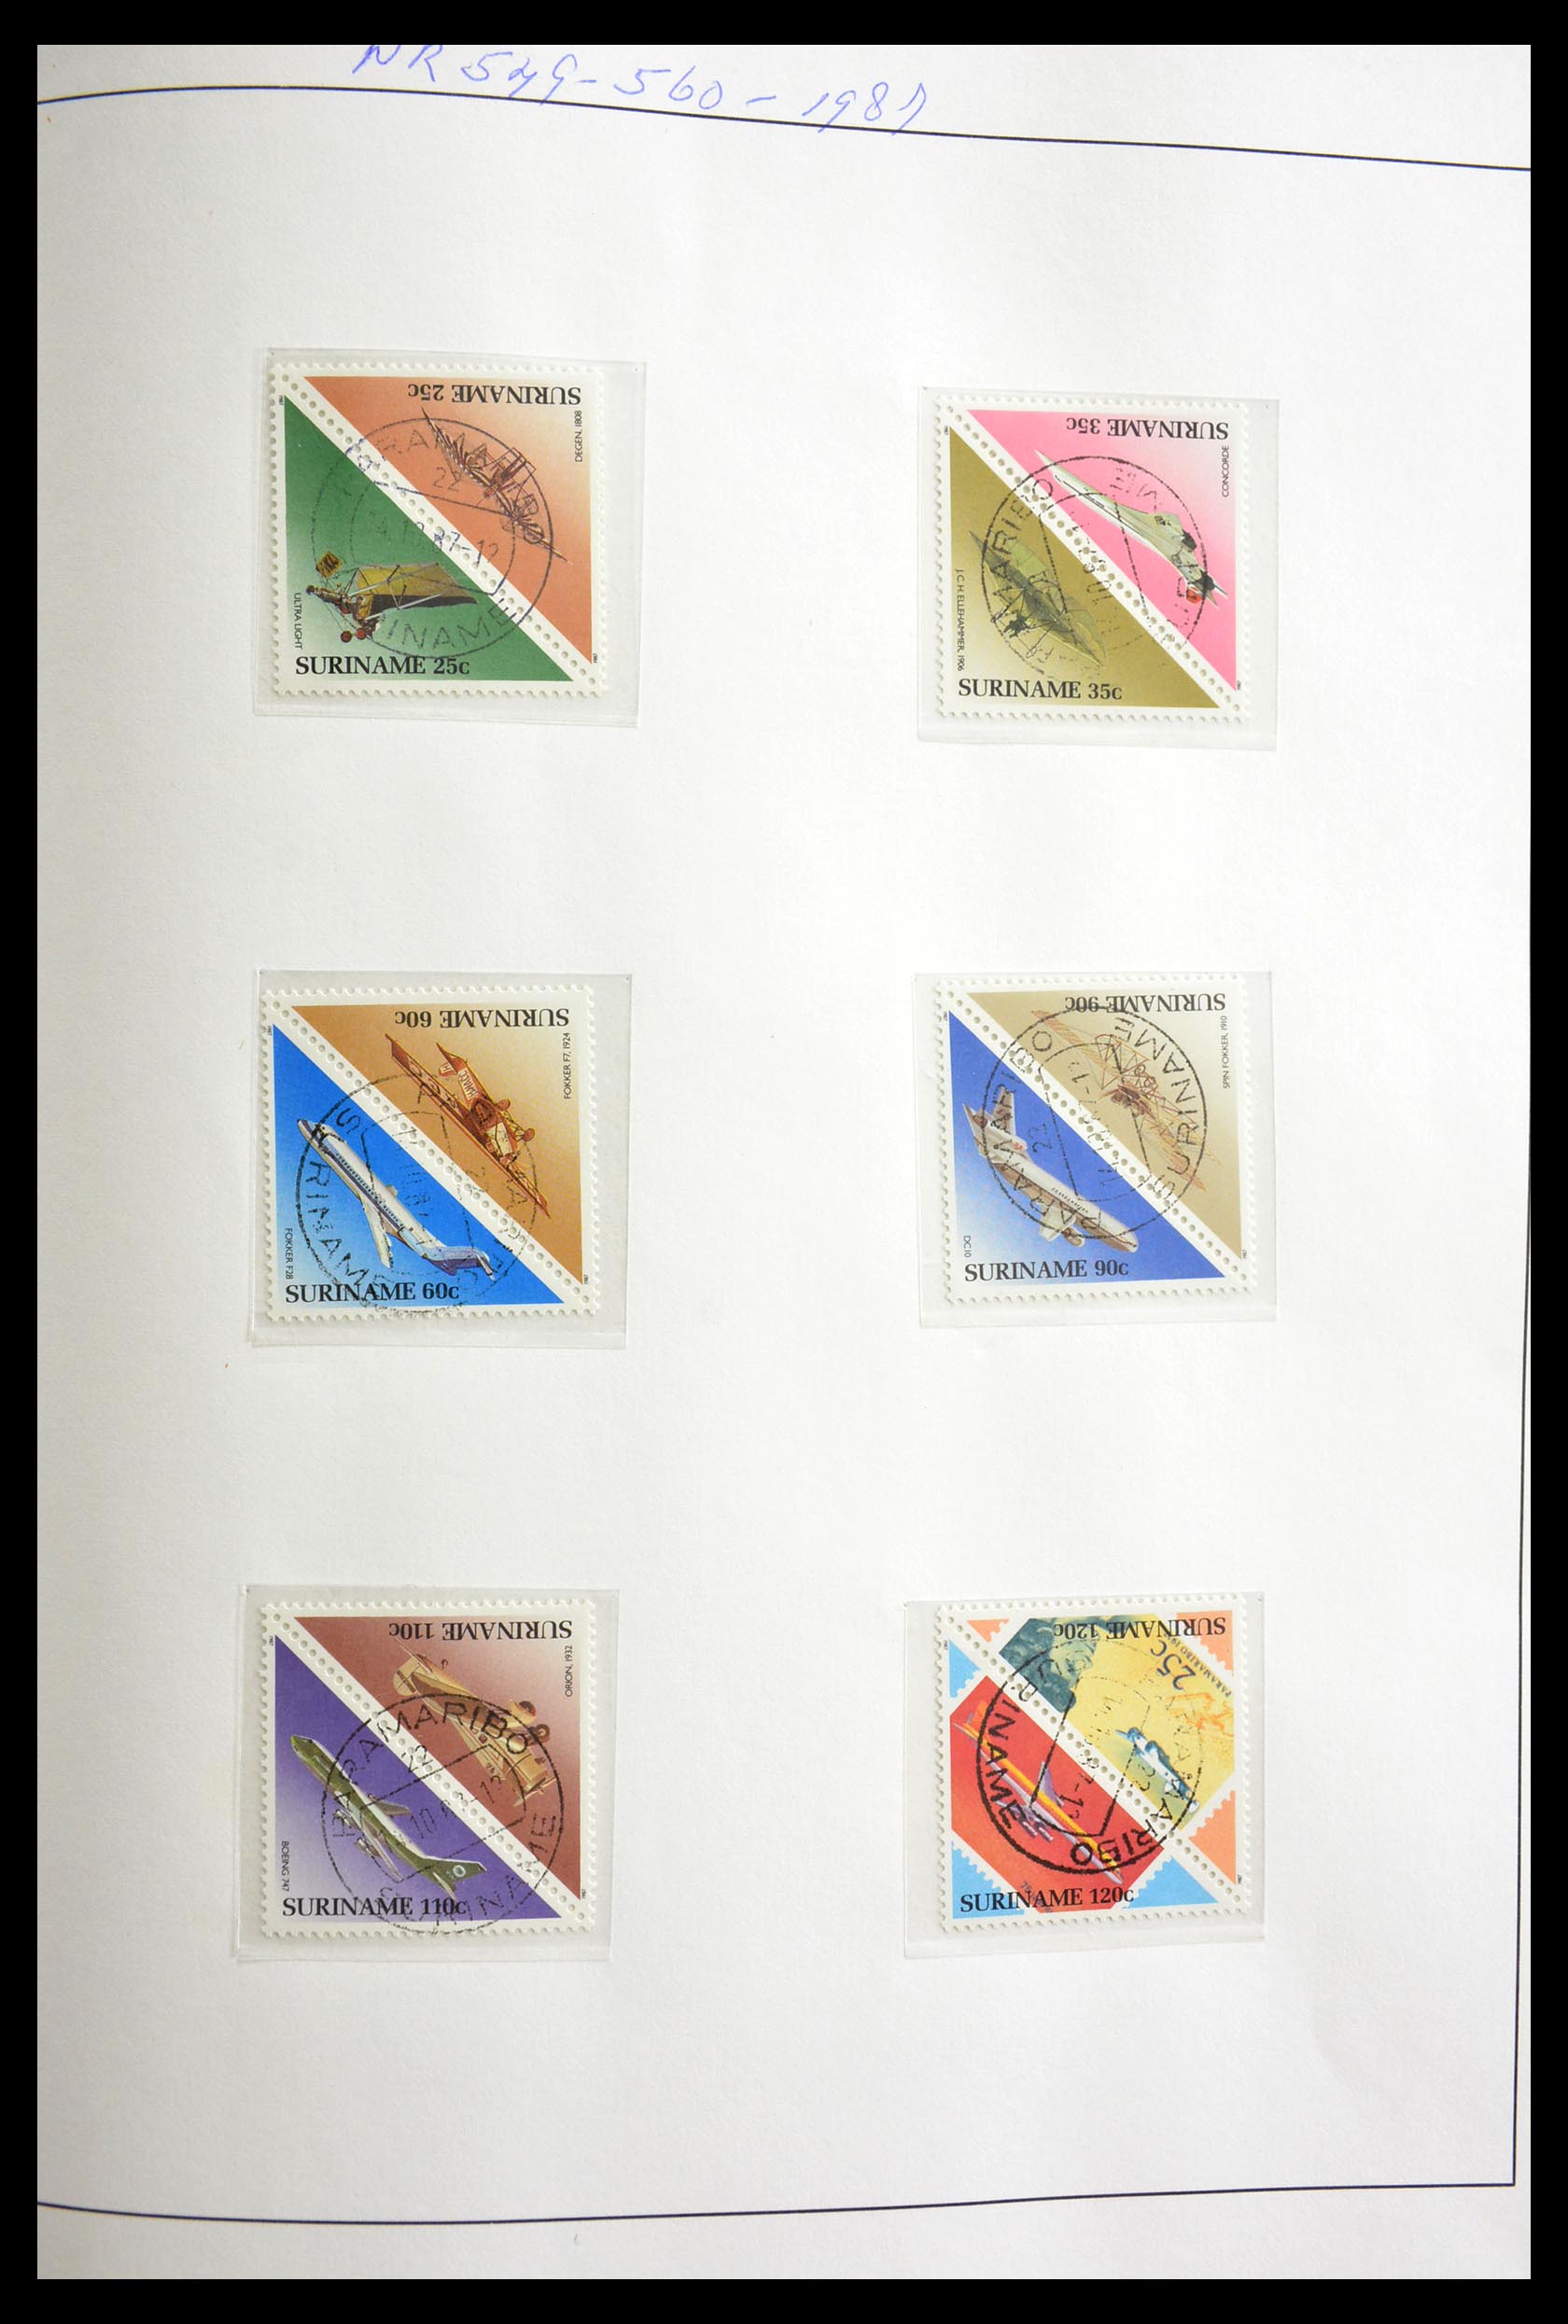 29154 061 - 29154 Suriname brugparen 1977-2003.